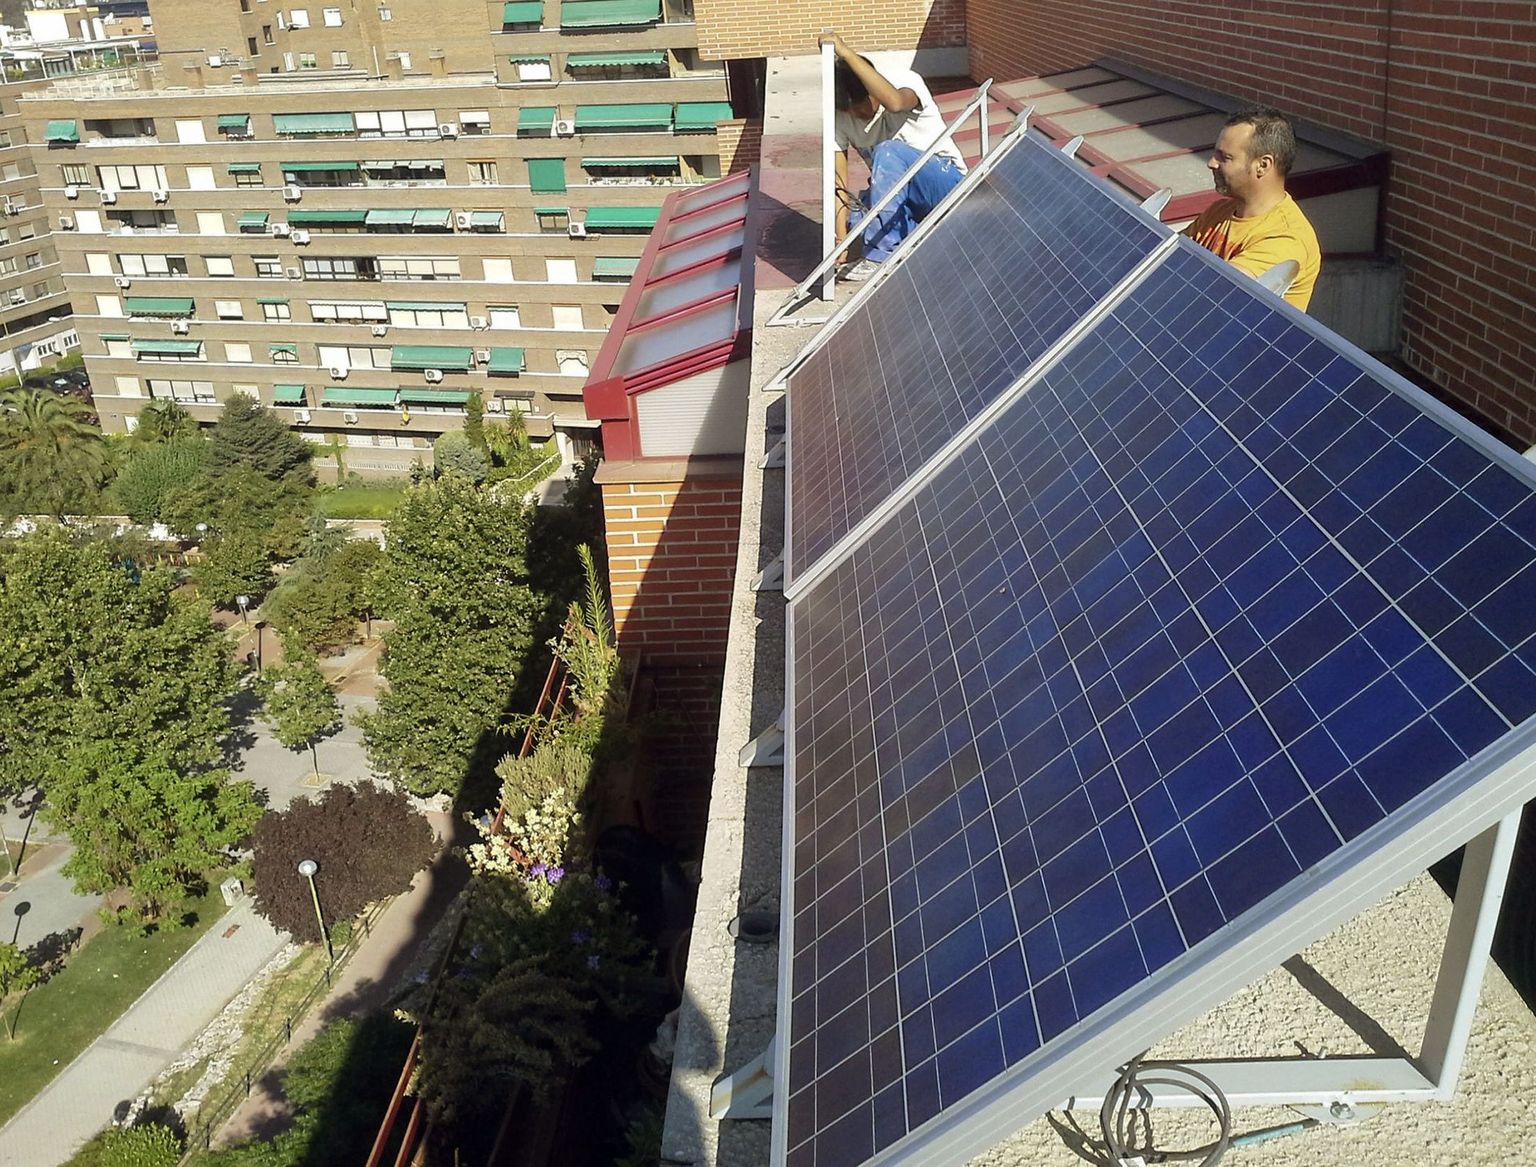 Päikesepaneelid Hispaania pealinnas Madridis kortermaja katusel.